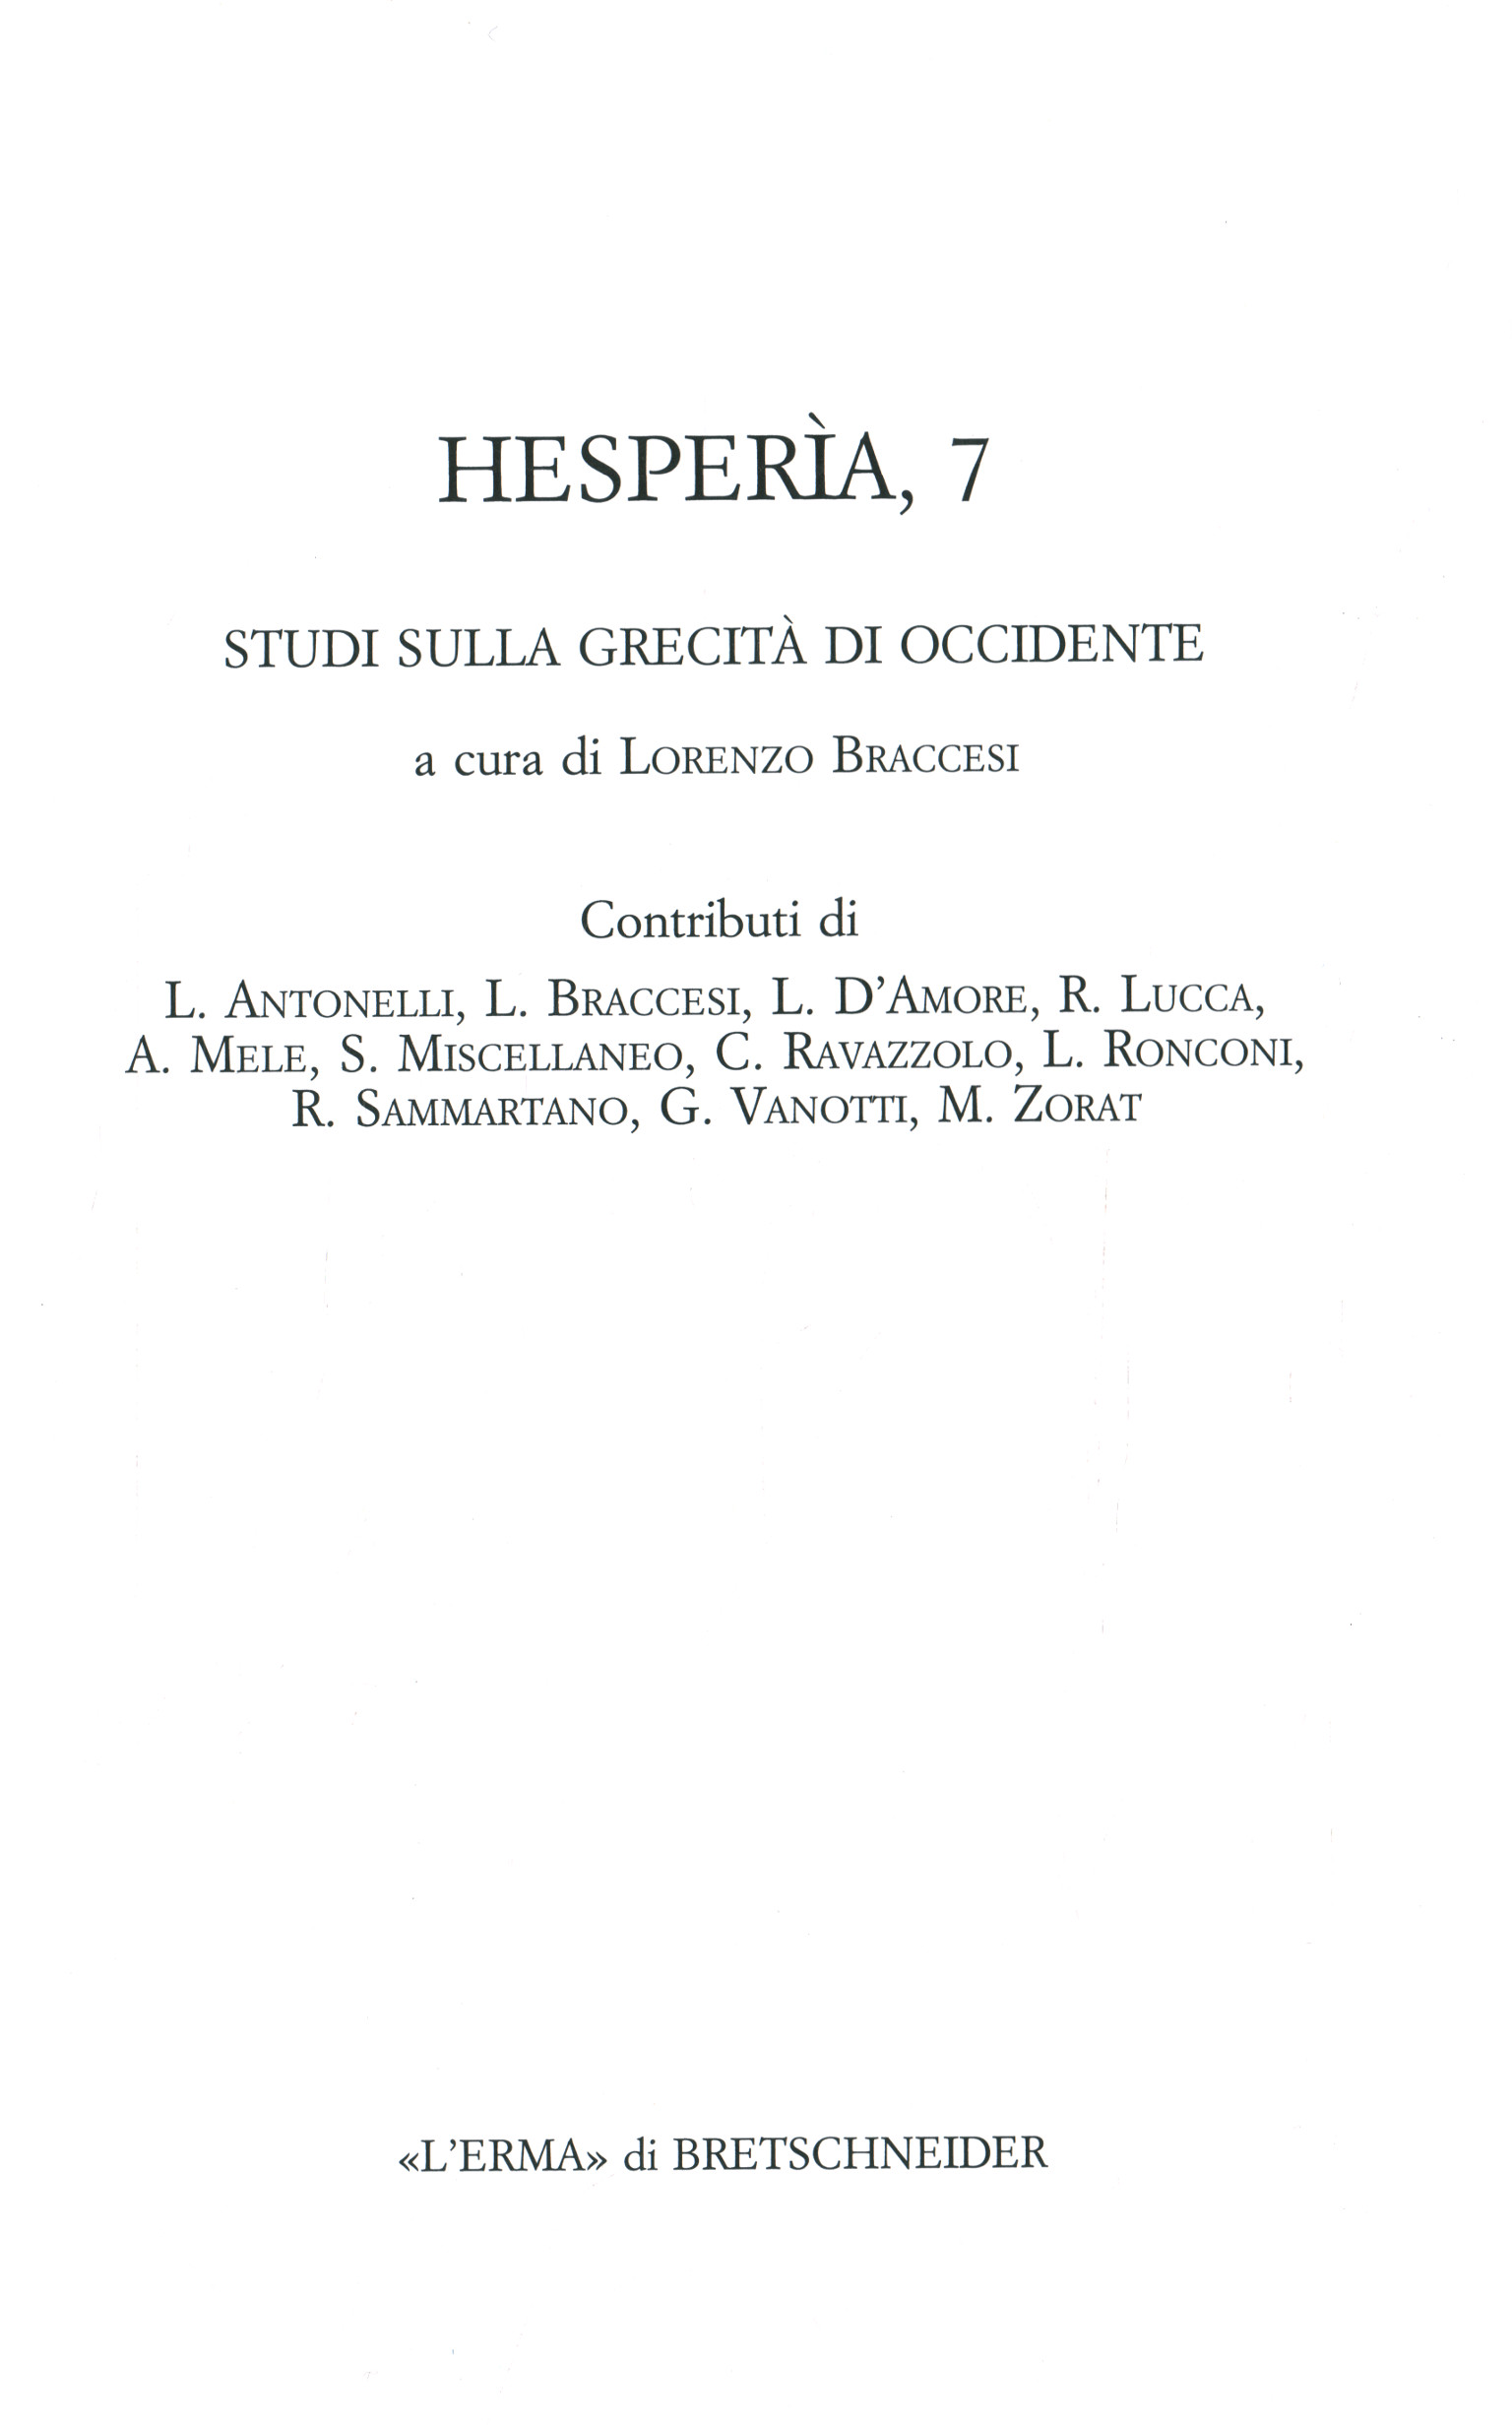 Hesperia 7 - Estudios sobre la cultura griega,Hesperia 7 - Estudios sobre la cultura griega